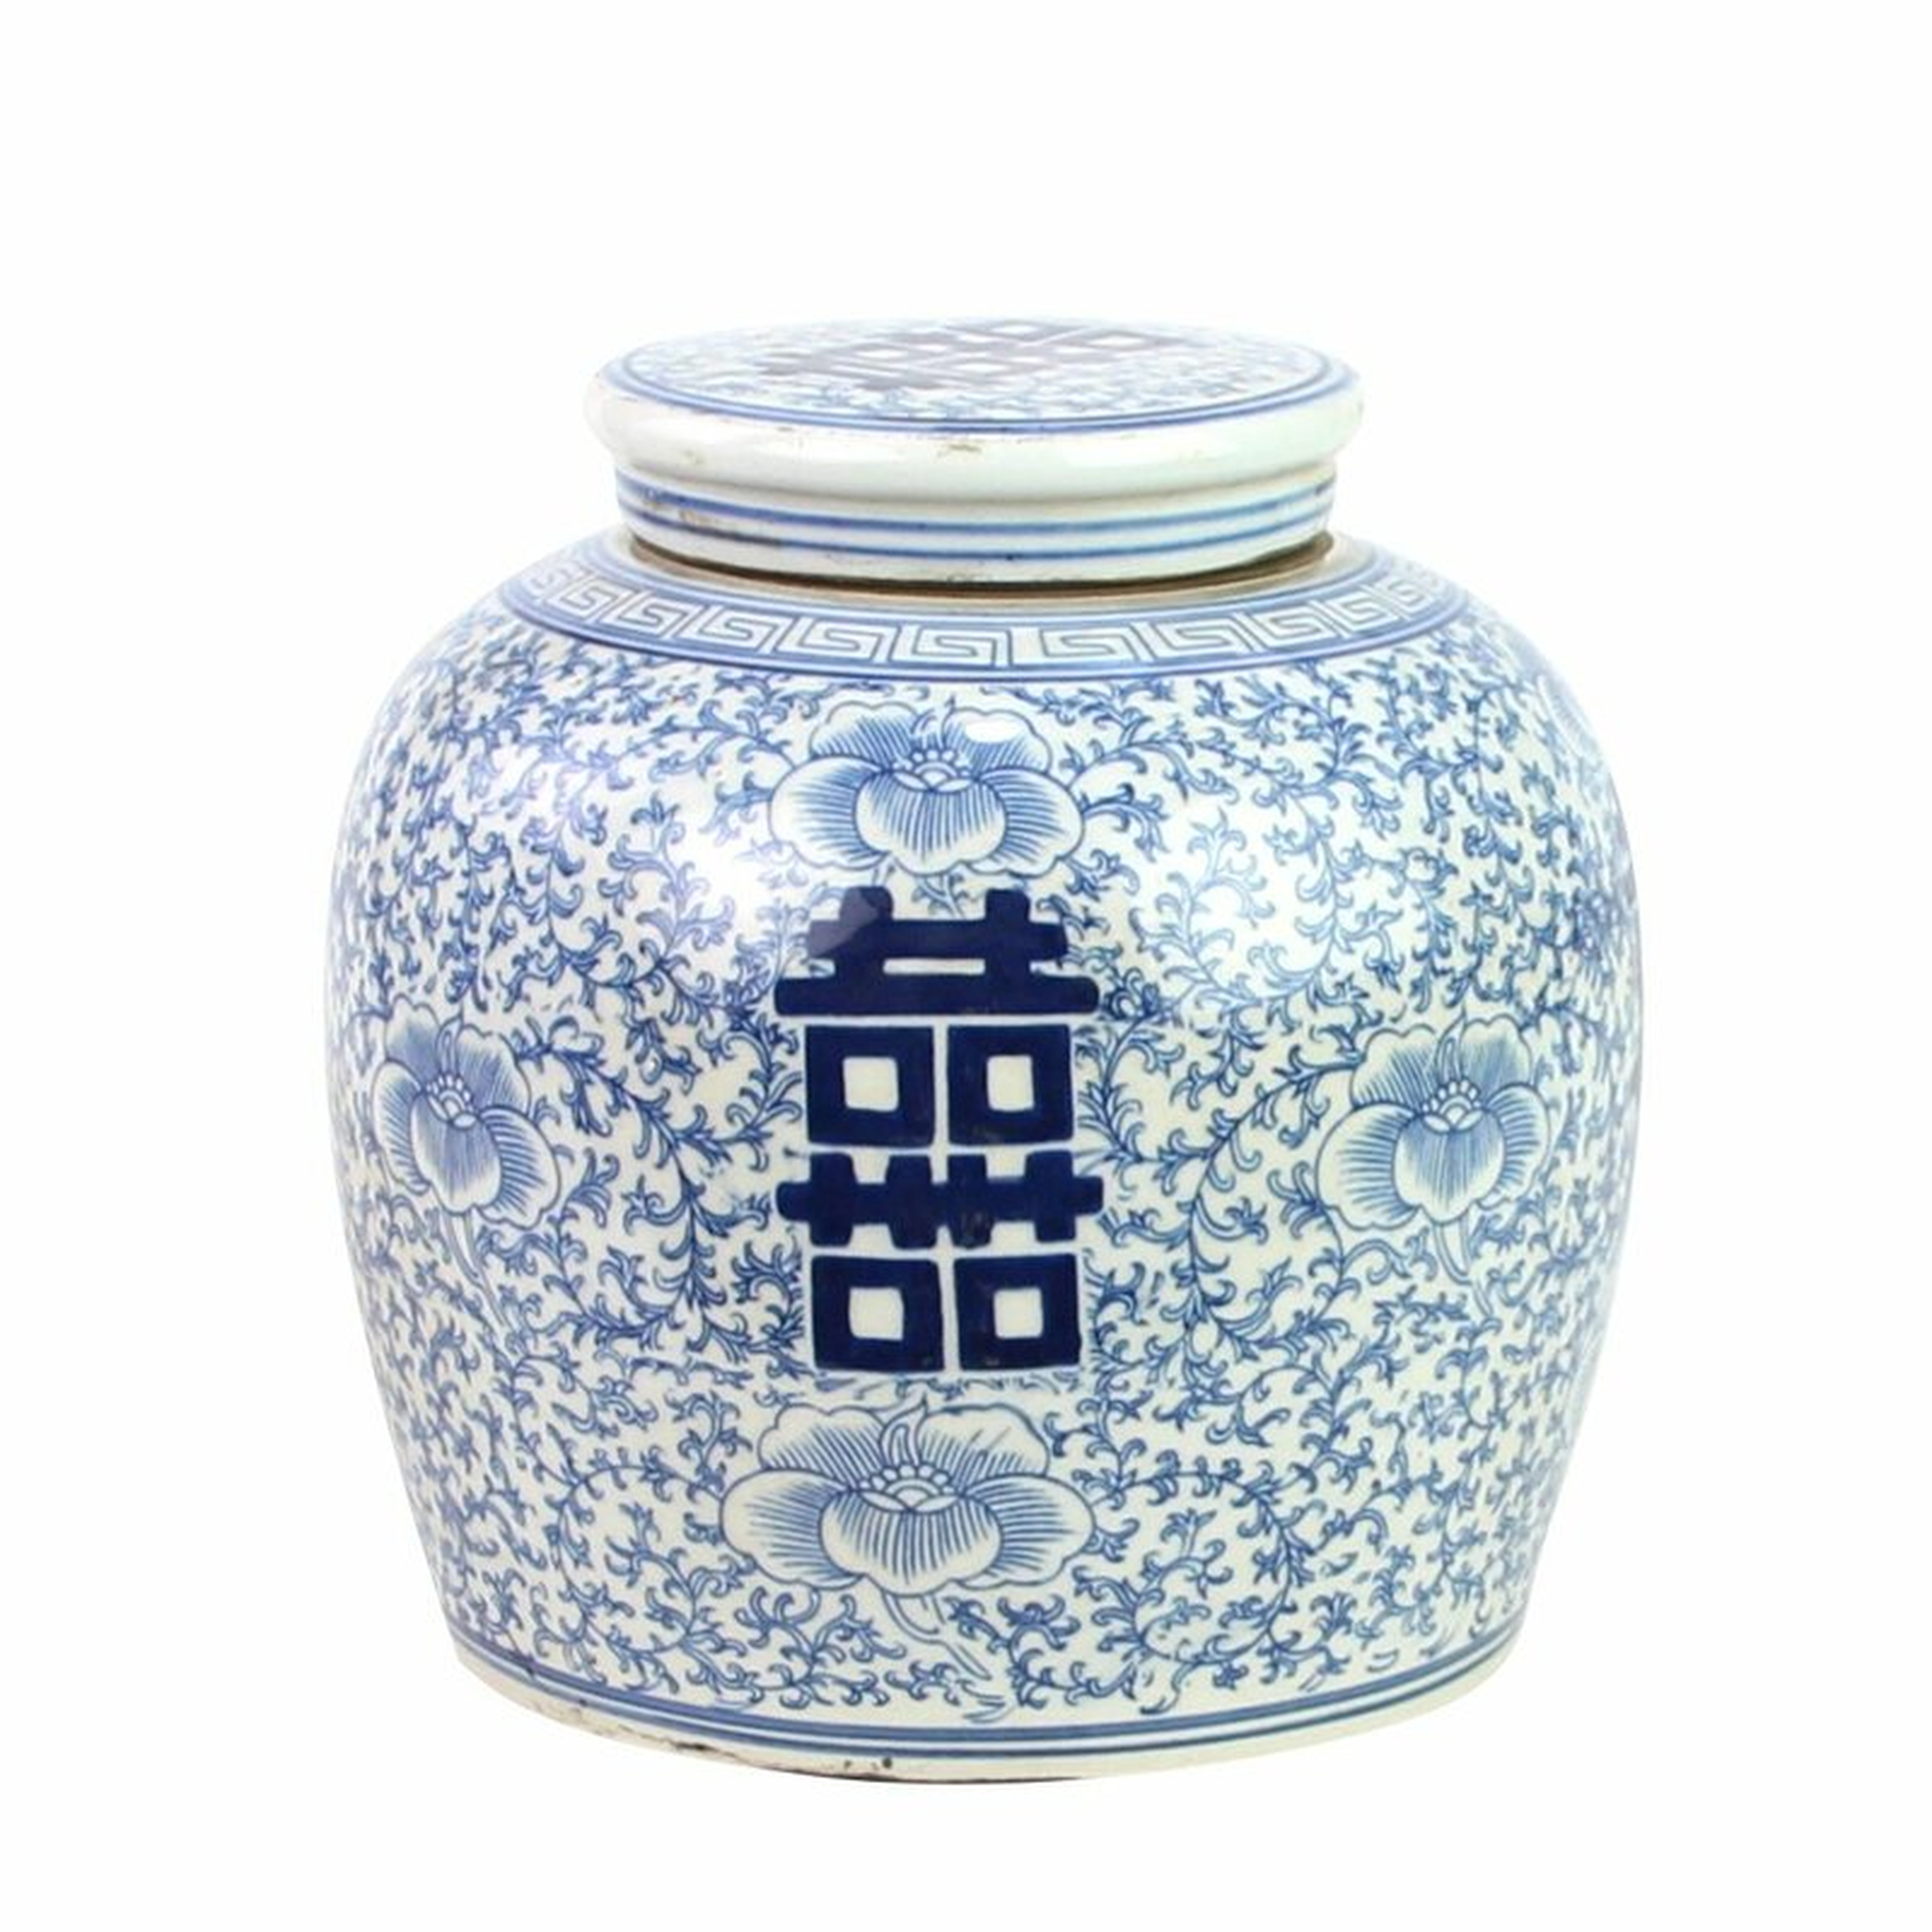 Legend of Asia Ming Blue/White 9"" Indoor / Outdoor Porcelain Ginger Jar - Perigold